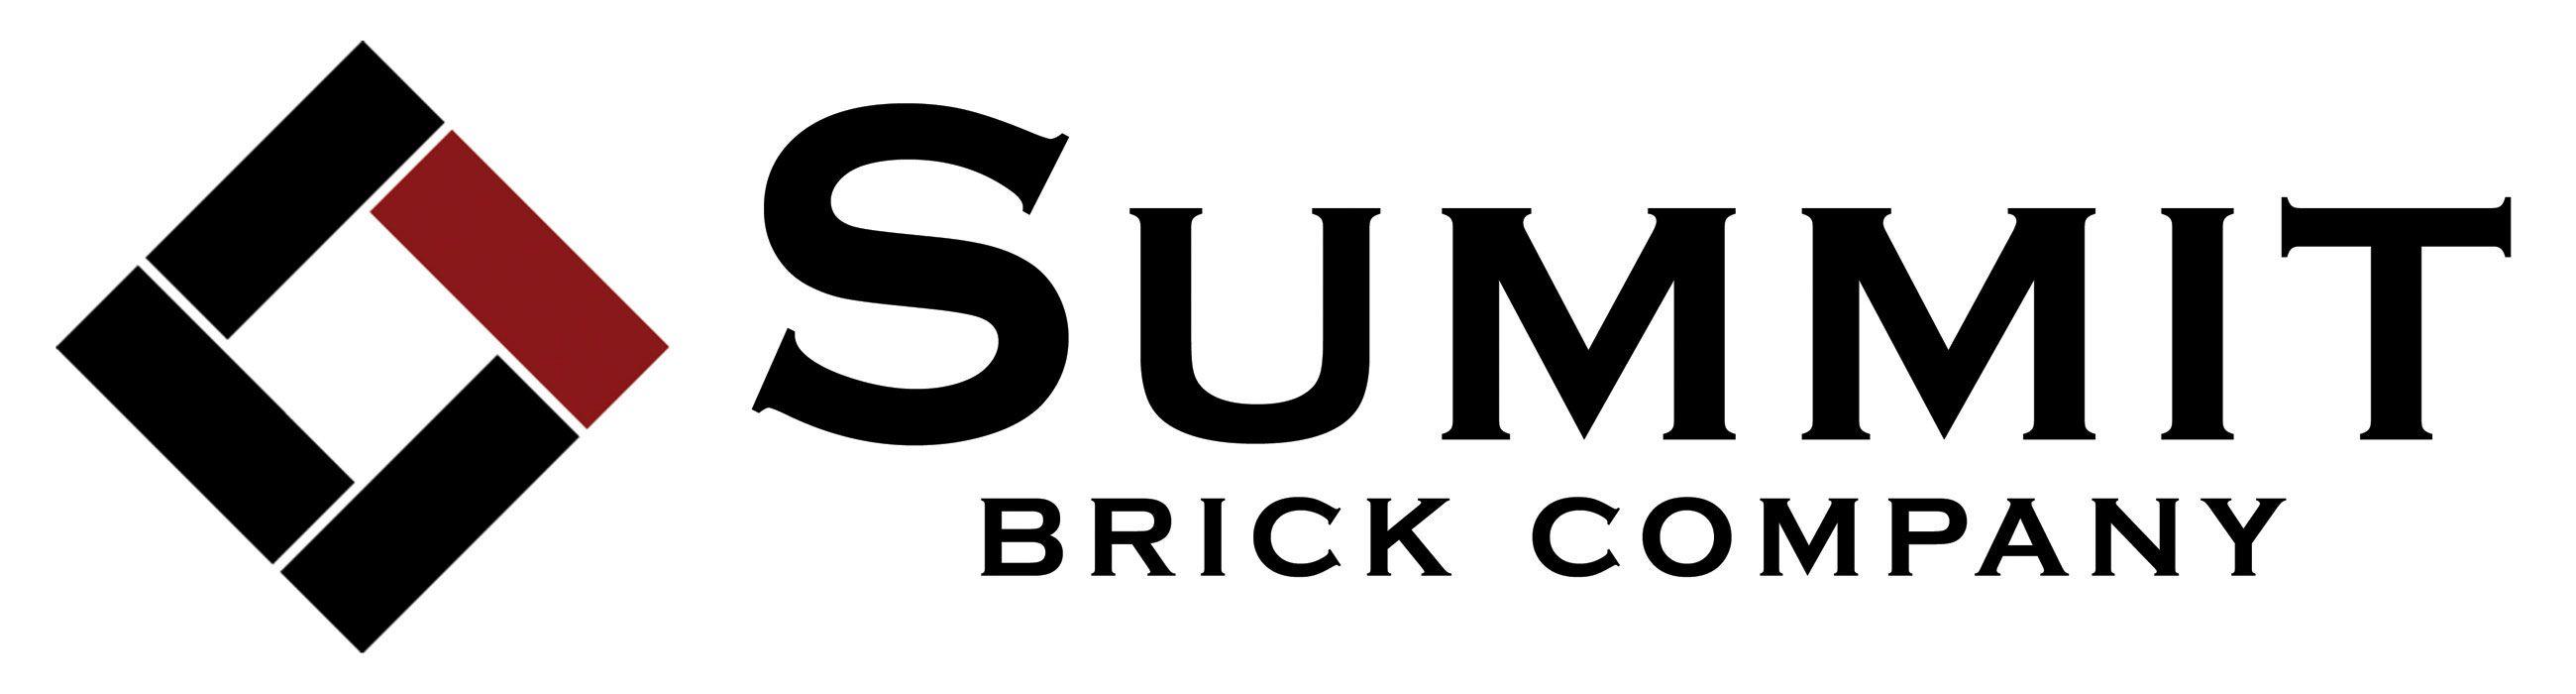 Brick Company Logo - Summit Brick Company Logo Brick & Stone Co